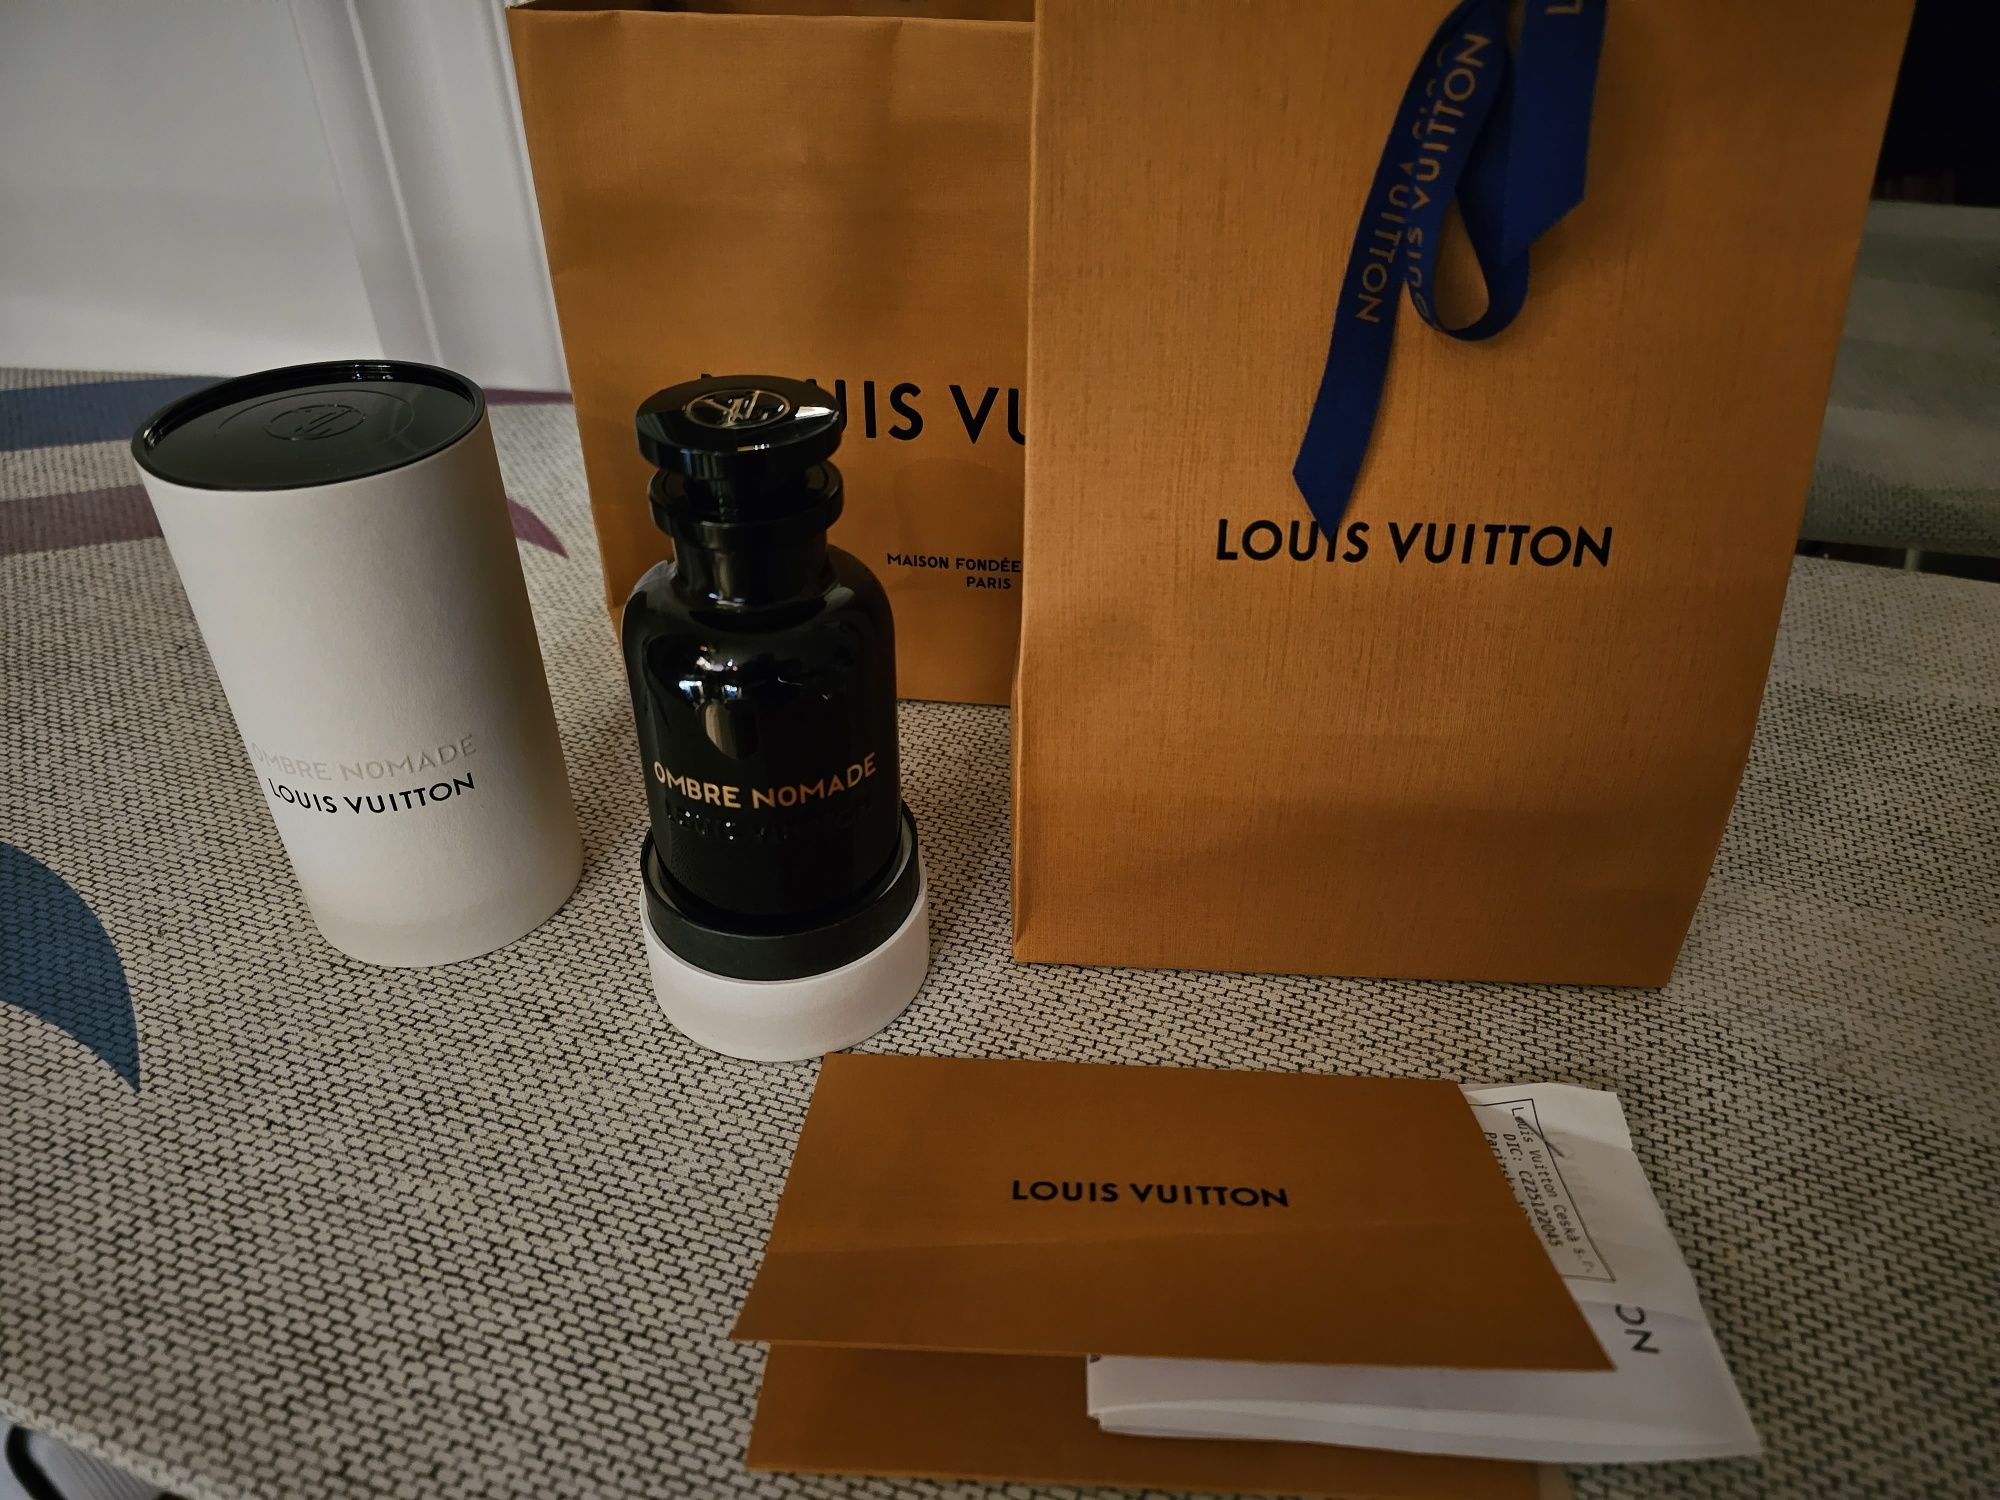 Perfum Louis Vuitton Ombre nomade 100ml 
W butelce brakuje 10ml.
Sprze